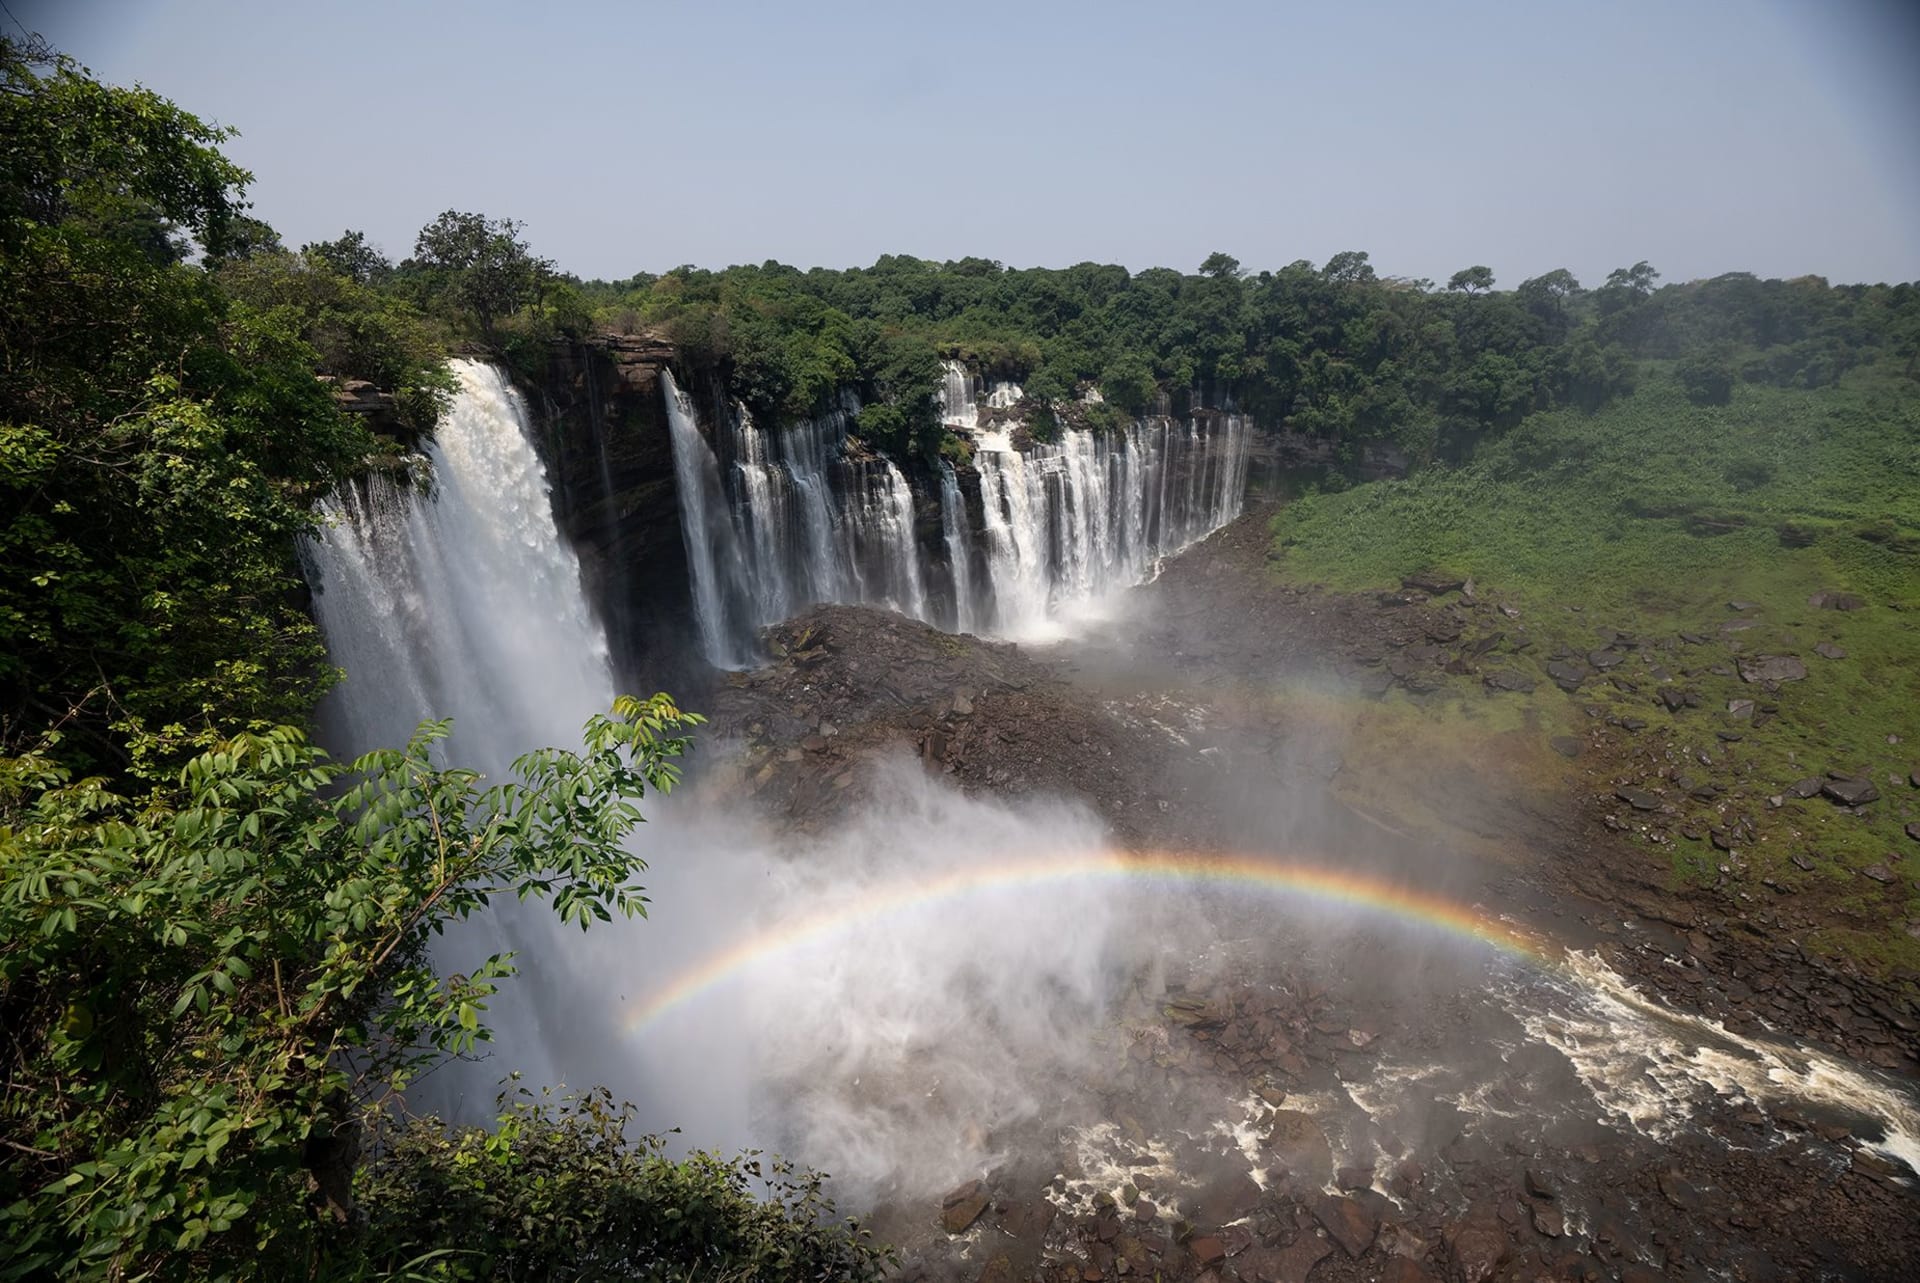 Vodopády Kalandula jsou jedny z největších v Africe, i když jsou o třetinu menší než Viktoriiny vodopády.